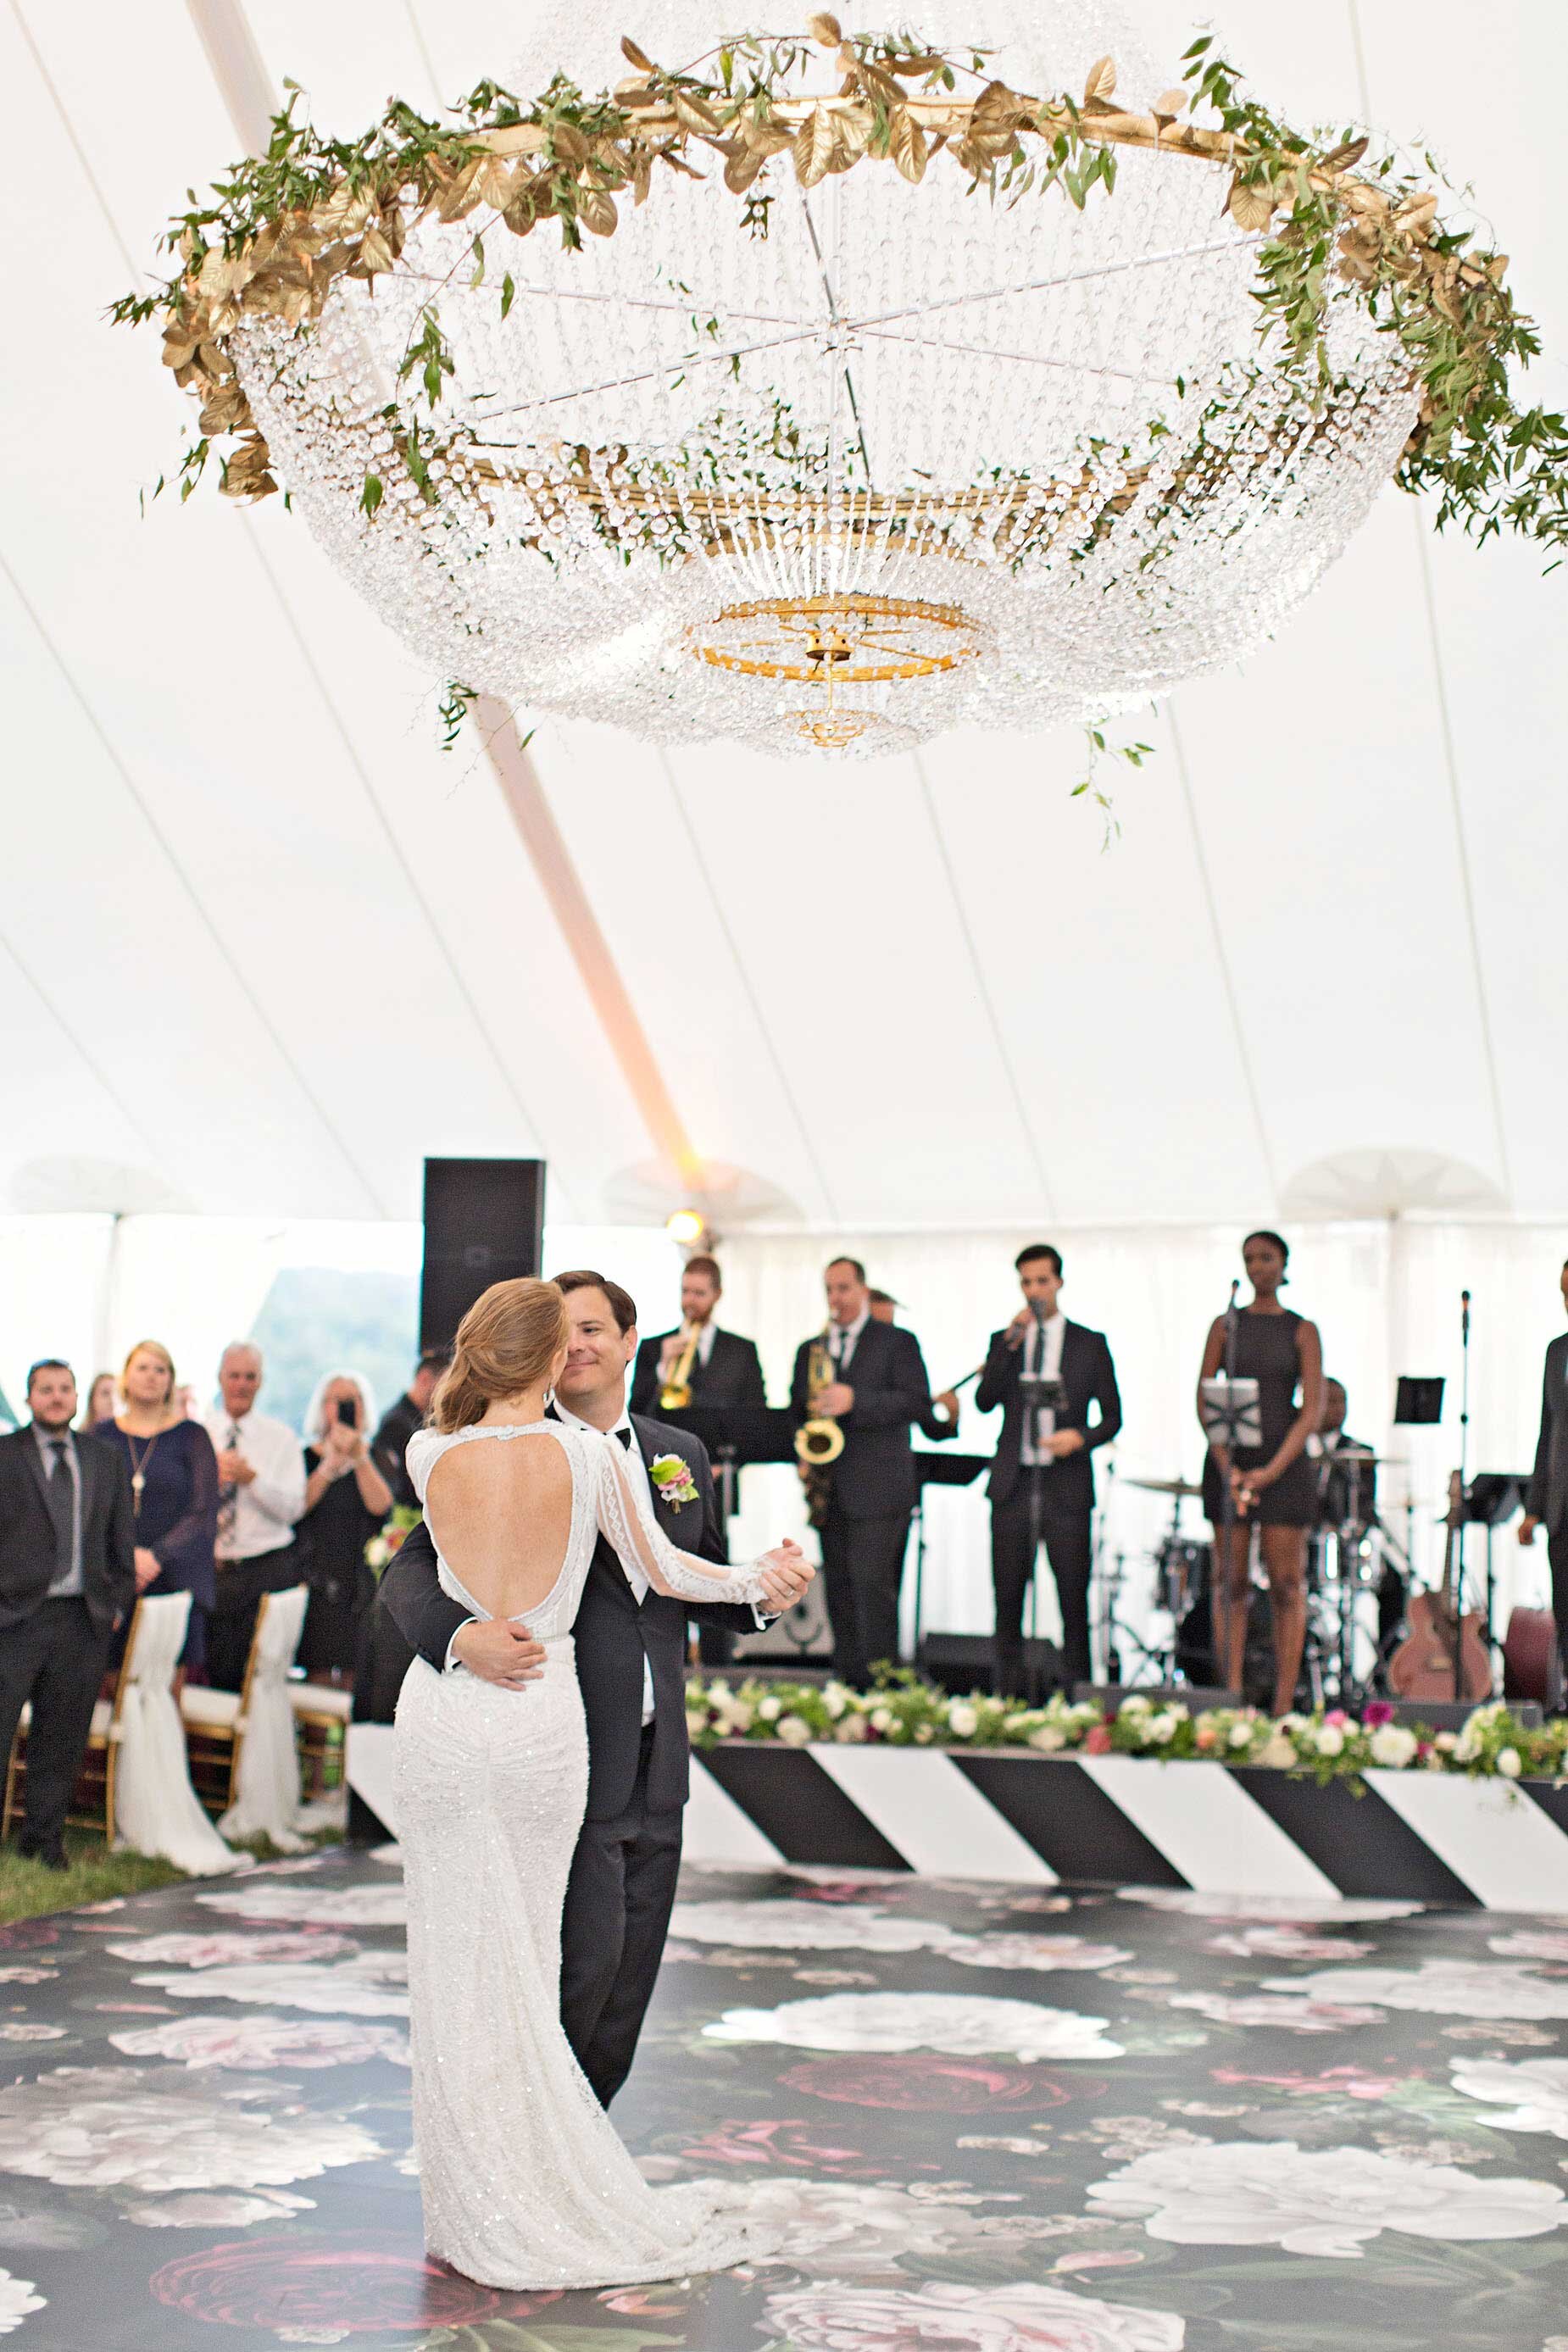 22 Unique Ideas For Your Wedding Dance Floor Martha Stewart Weddings